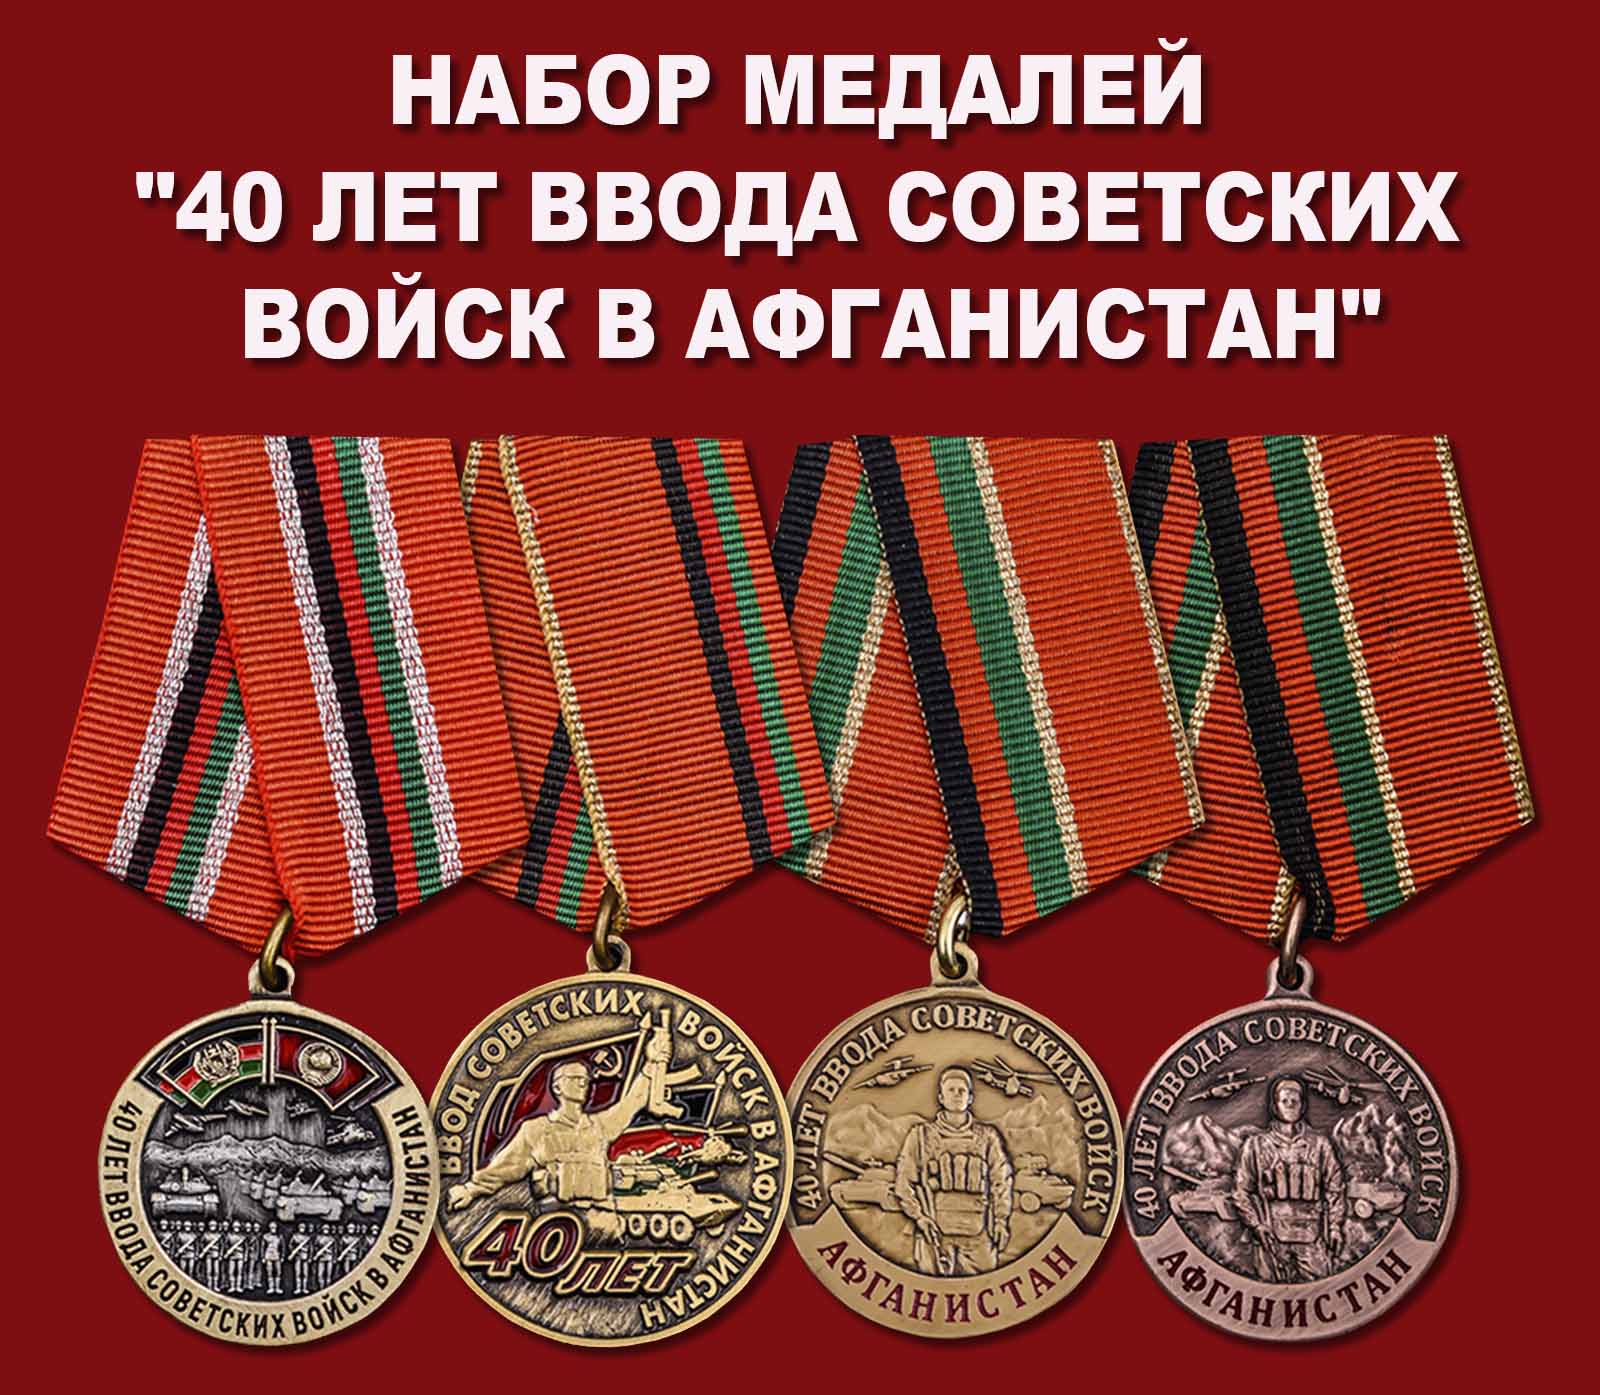 Купить набор медалей "40 лет ввода Советских войск в Афганистан"